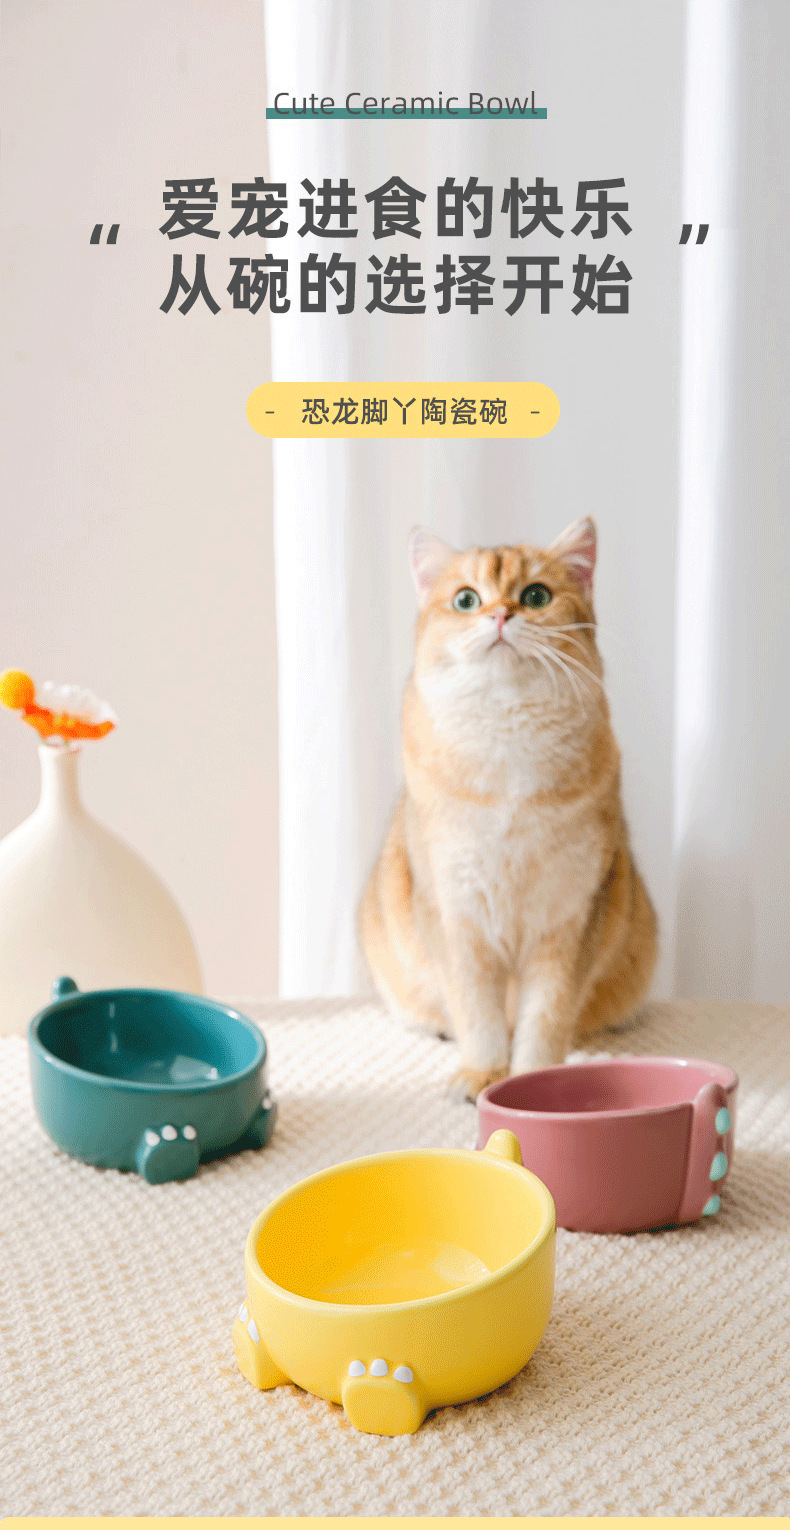 猫碗陶瓷狗碗防打翻高脚保护颈椎双碗食盆猫咪喝水碗饮水宠物用品